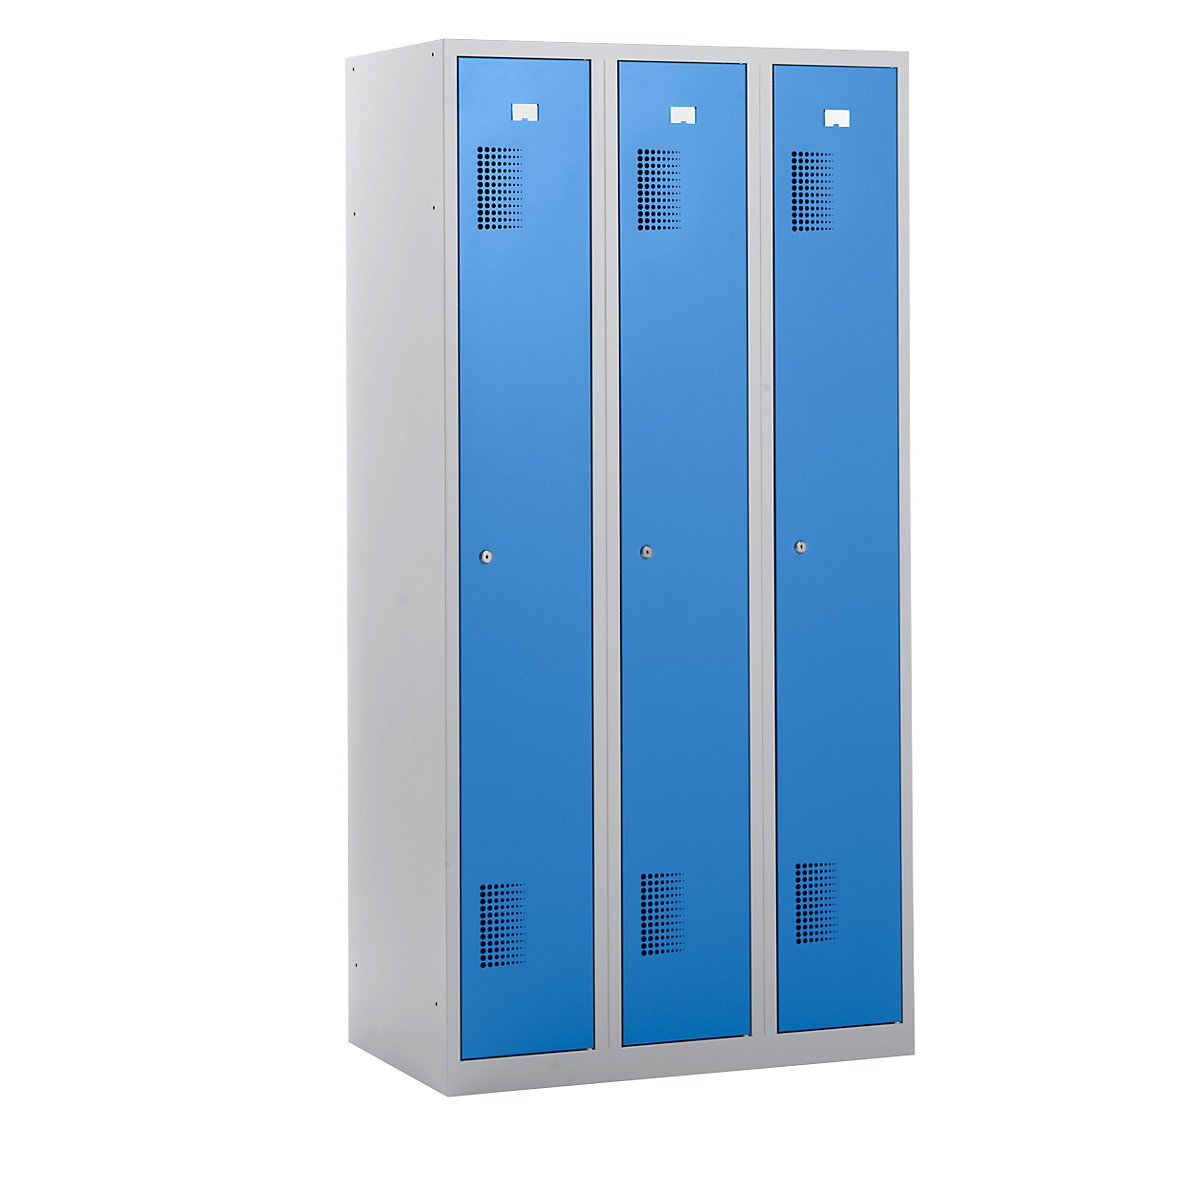 Vestiaires AMSTERDAM – eurokraft basic, hauteur 1800 mm, largeur 900 mm, 3 compartiments de 298 mm, serrure à cylindre, corps gris clair, portes bleu clair